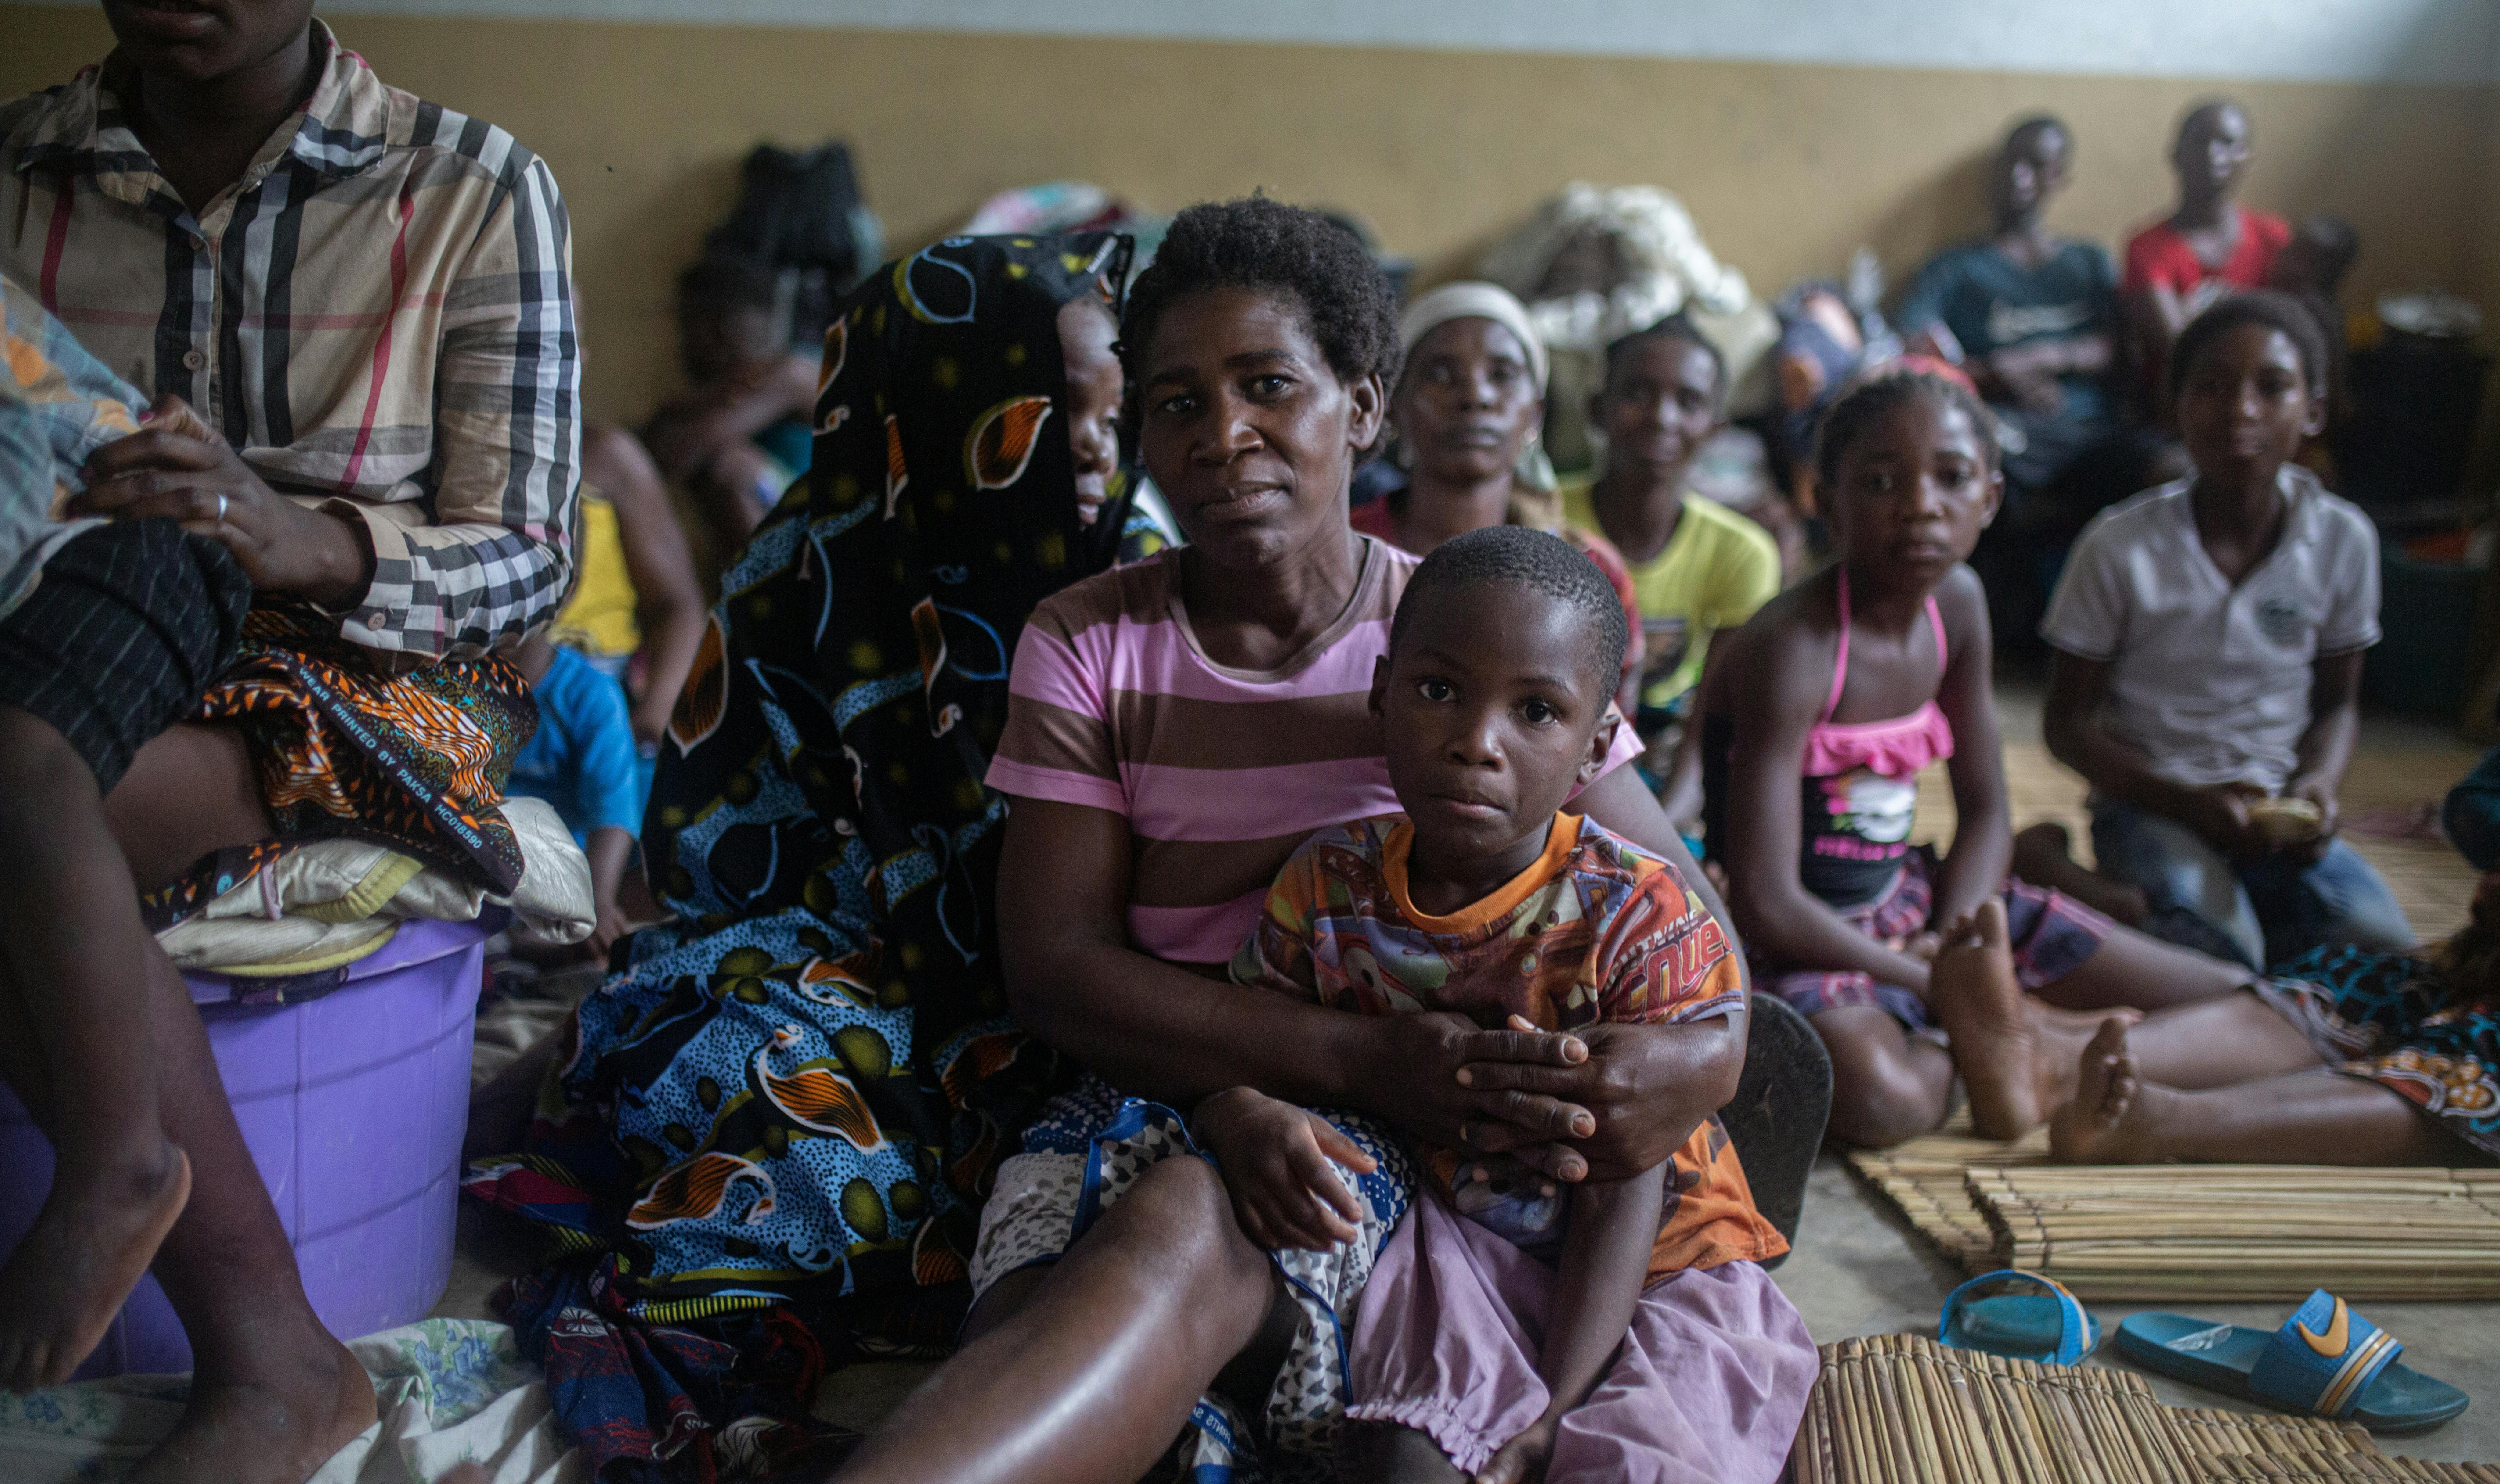 Mozambico - Famiglie rifugiate in una scuola a causa del tifone